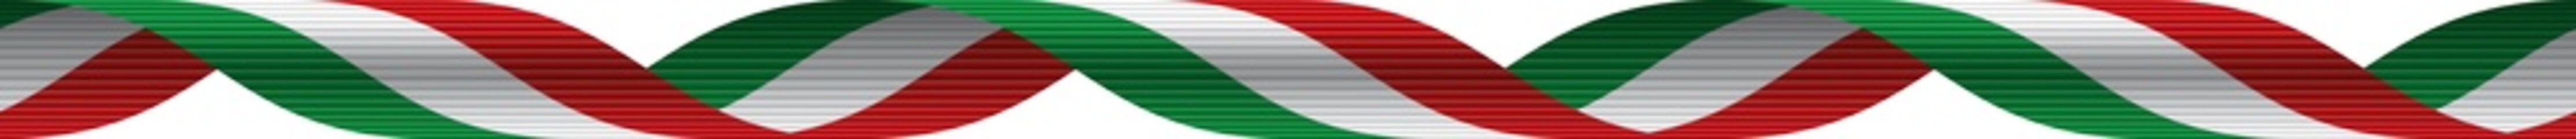 Nastro tricolore italiano - Italian ribbon